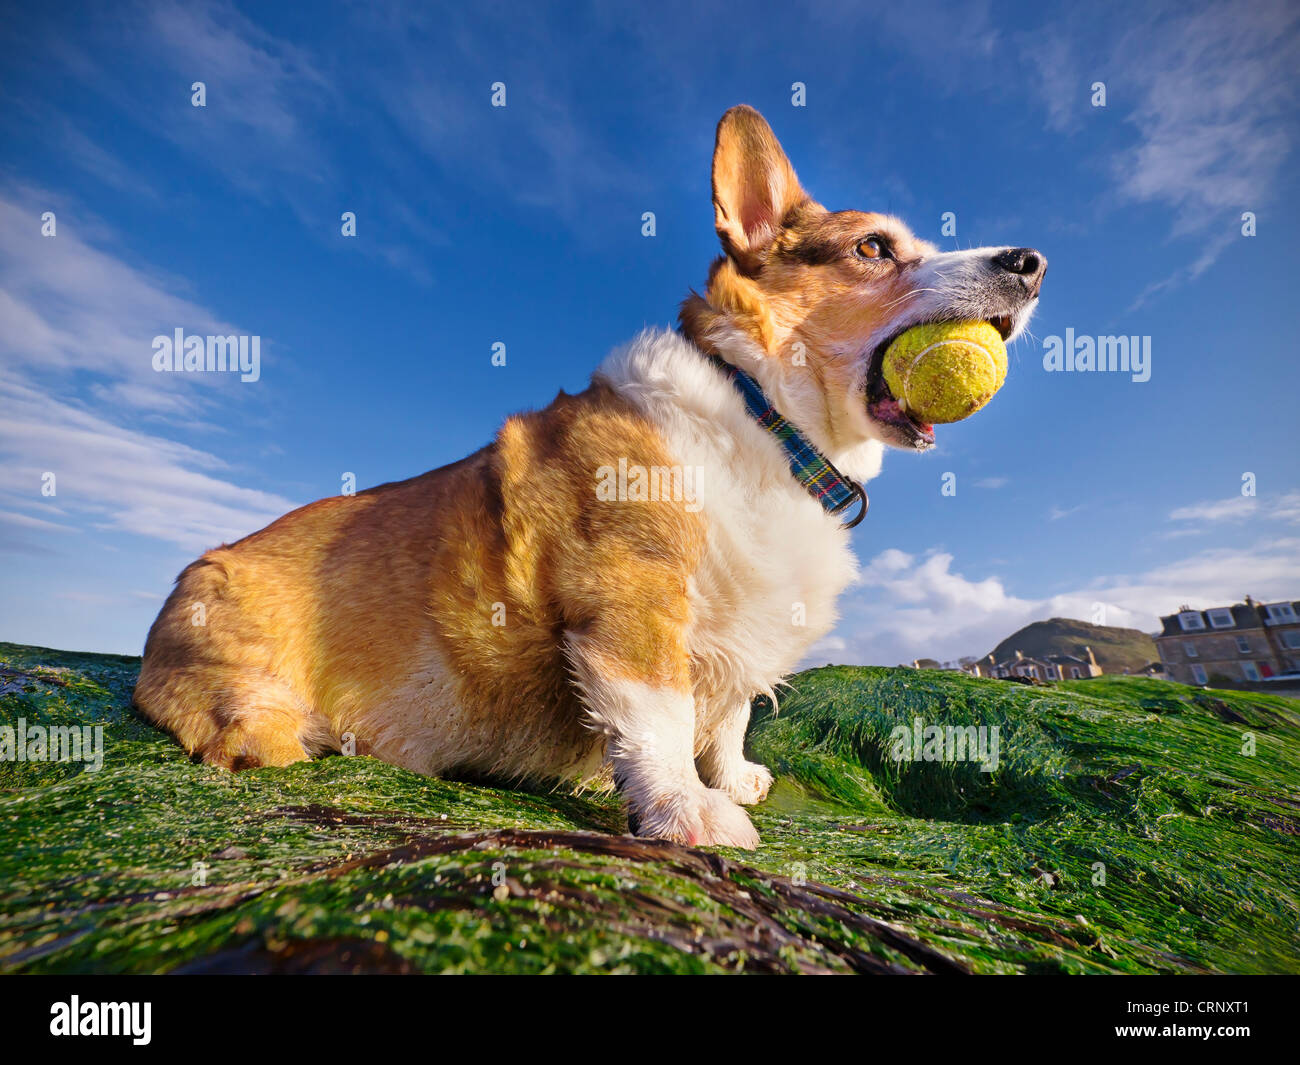 Un Welsh Corgi Cardigan (chien) tenant une balle de tennis dans sa bouche, jouant sur une plage. Banque D'Images